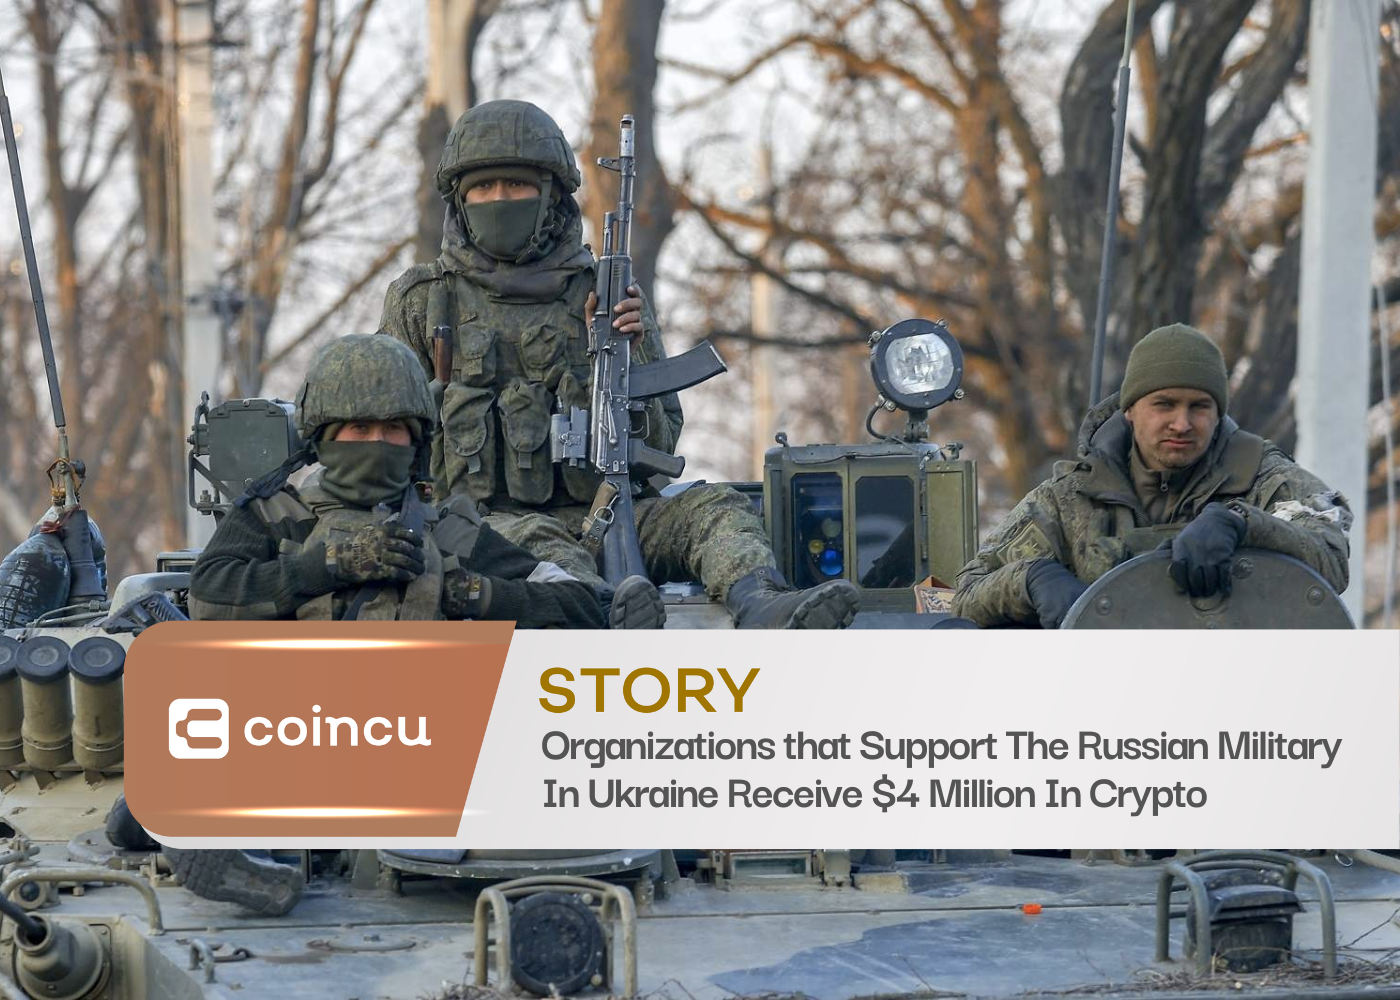 Les organisations qui soutiennent l'armée russe en Ukraine reçoivent 4 millions de dollars en crypto